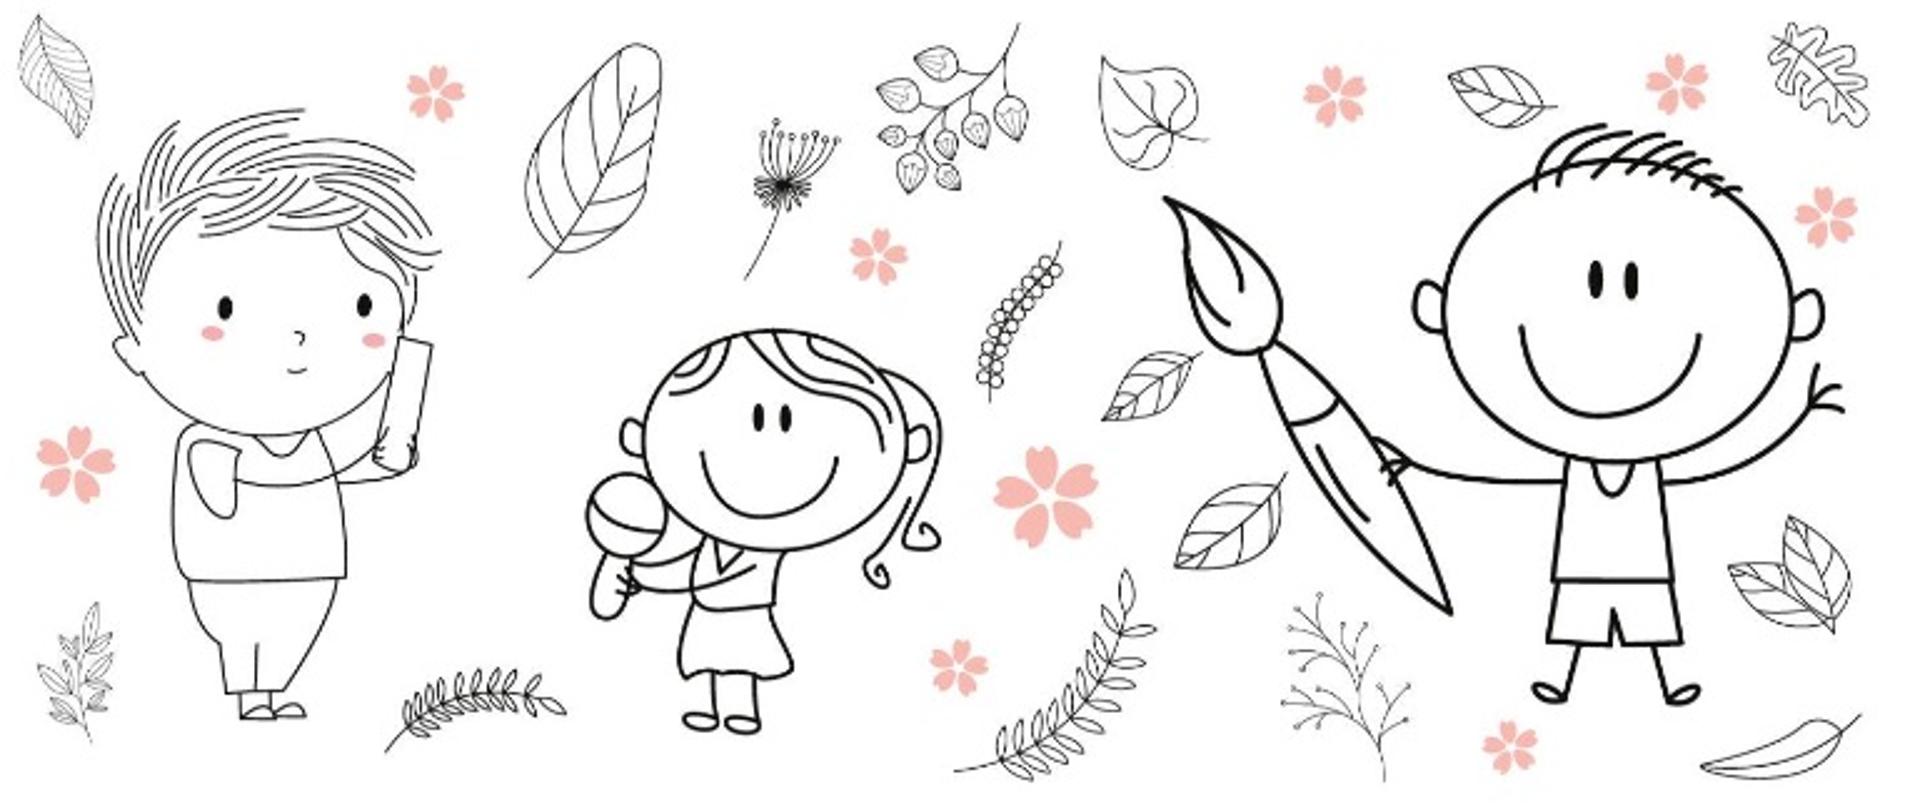 Rysunki po lewej chłopca, na środku dziewczynki, po prawej stronie chłopca z pędzlem w prawej dłoni, pomiędzy nimi znajdują się różnorodne liście.